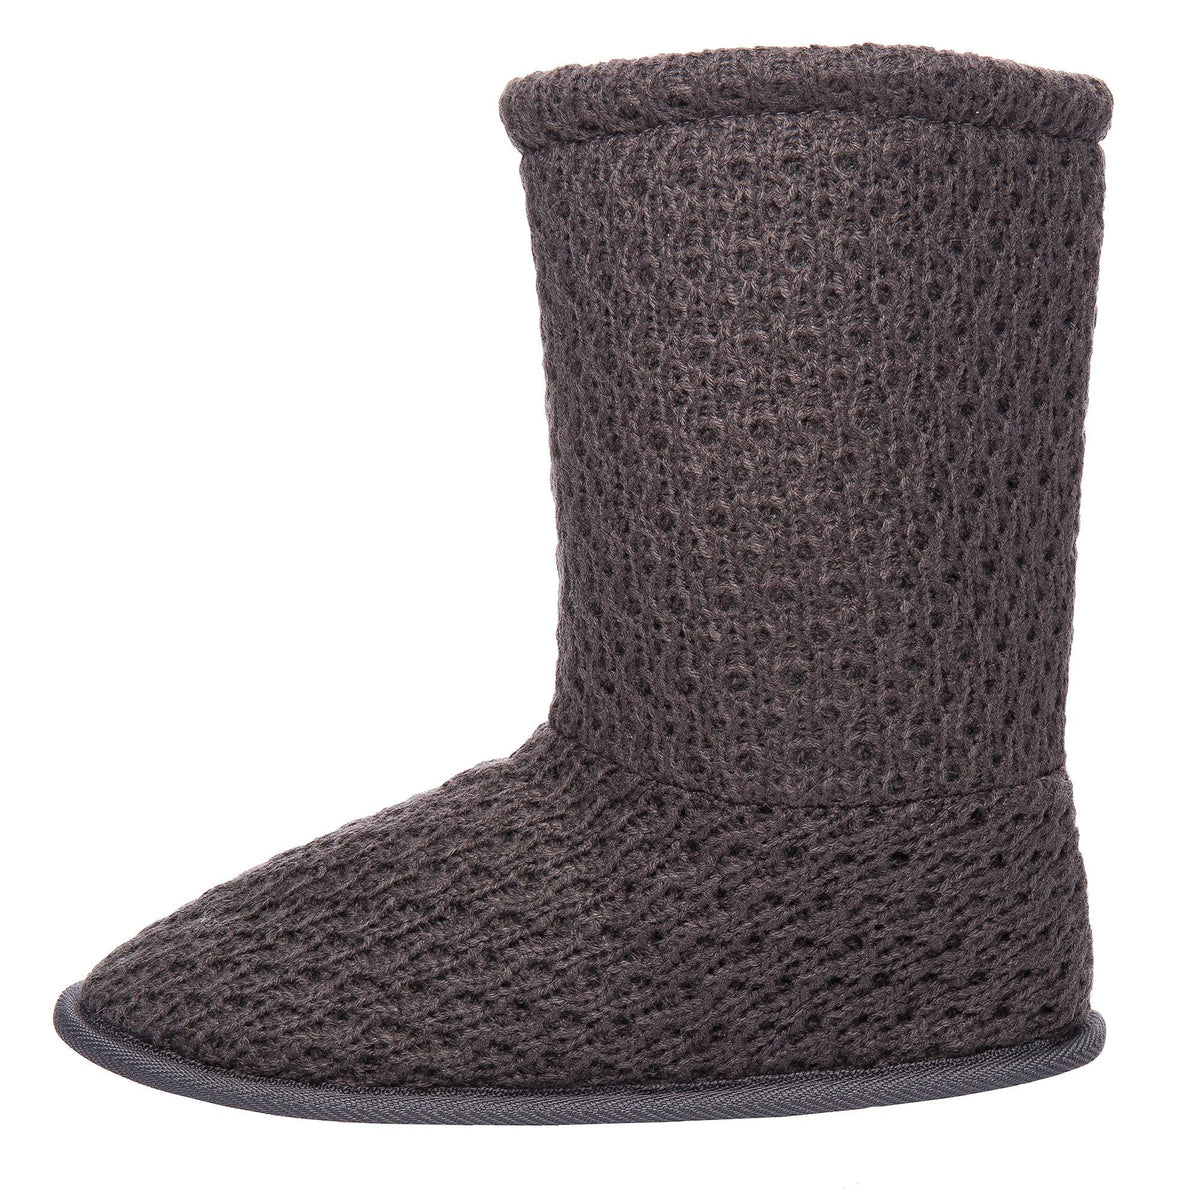 Women's Cozy Crochet Boot Slipper - Grey